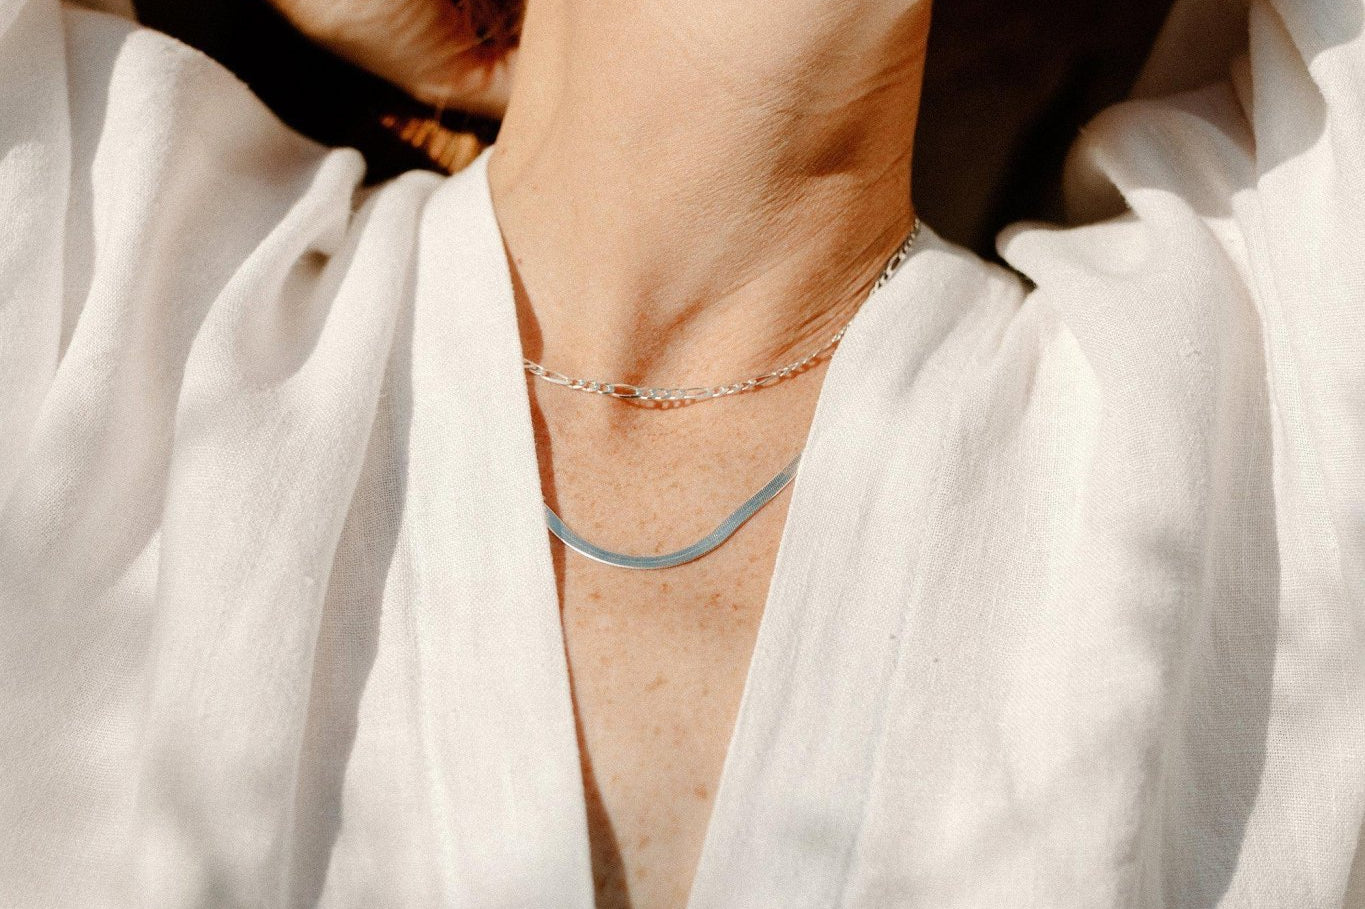 Silver Herringbone and Thin Figaro Necklace Chain Set - Dea Dia